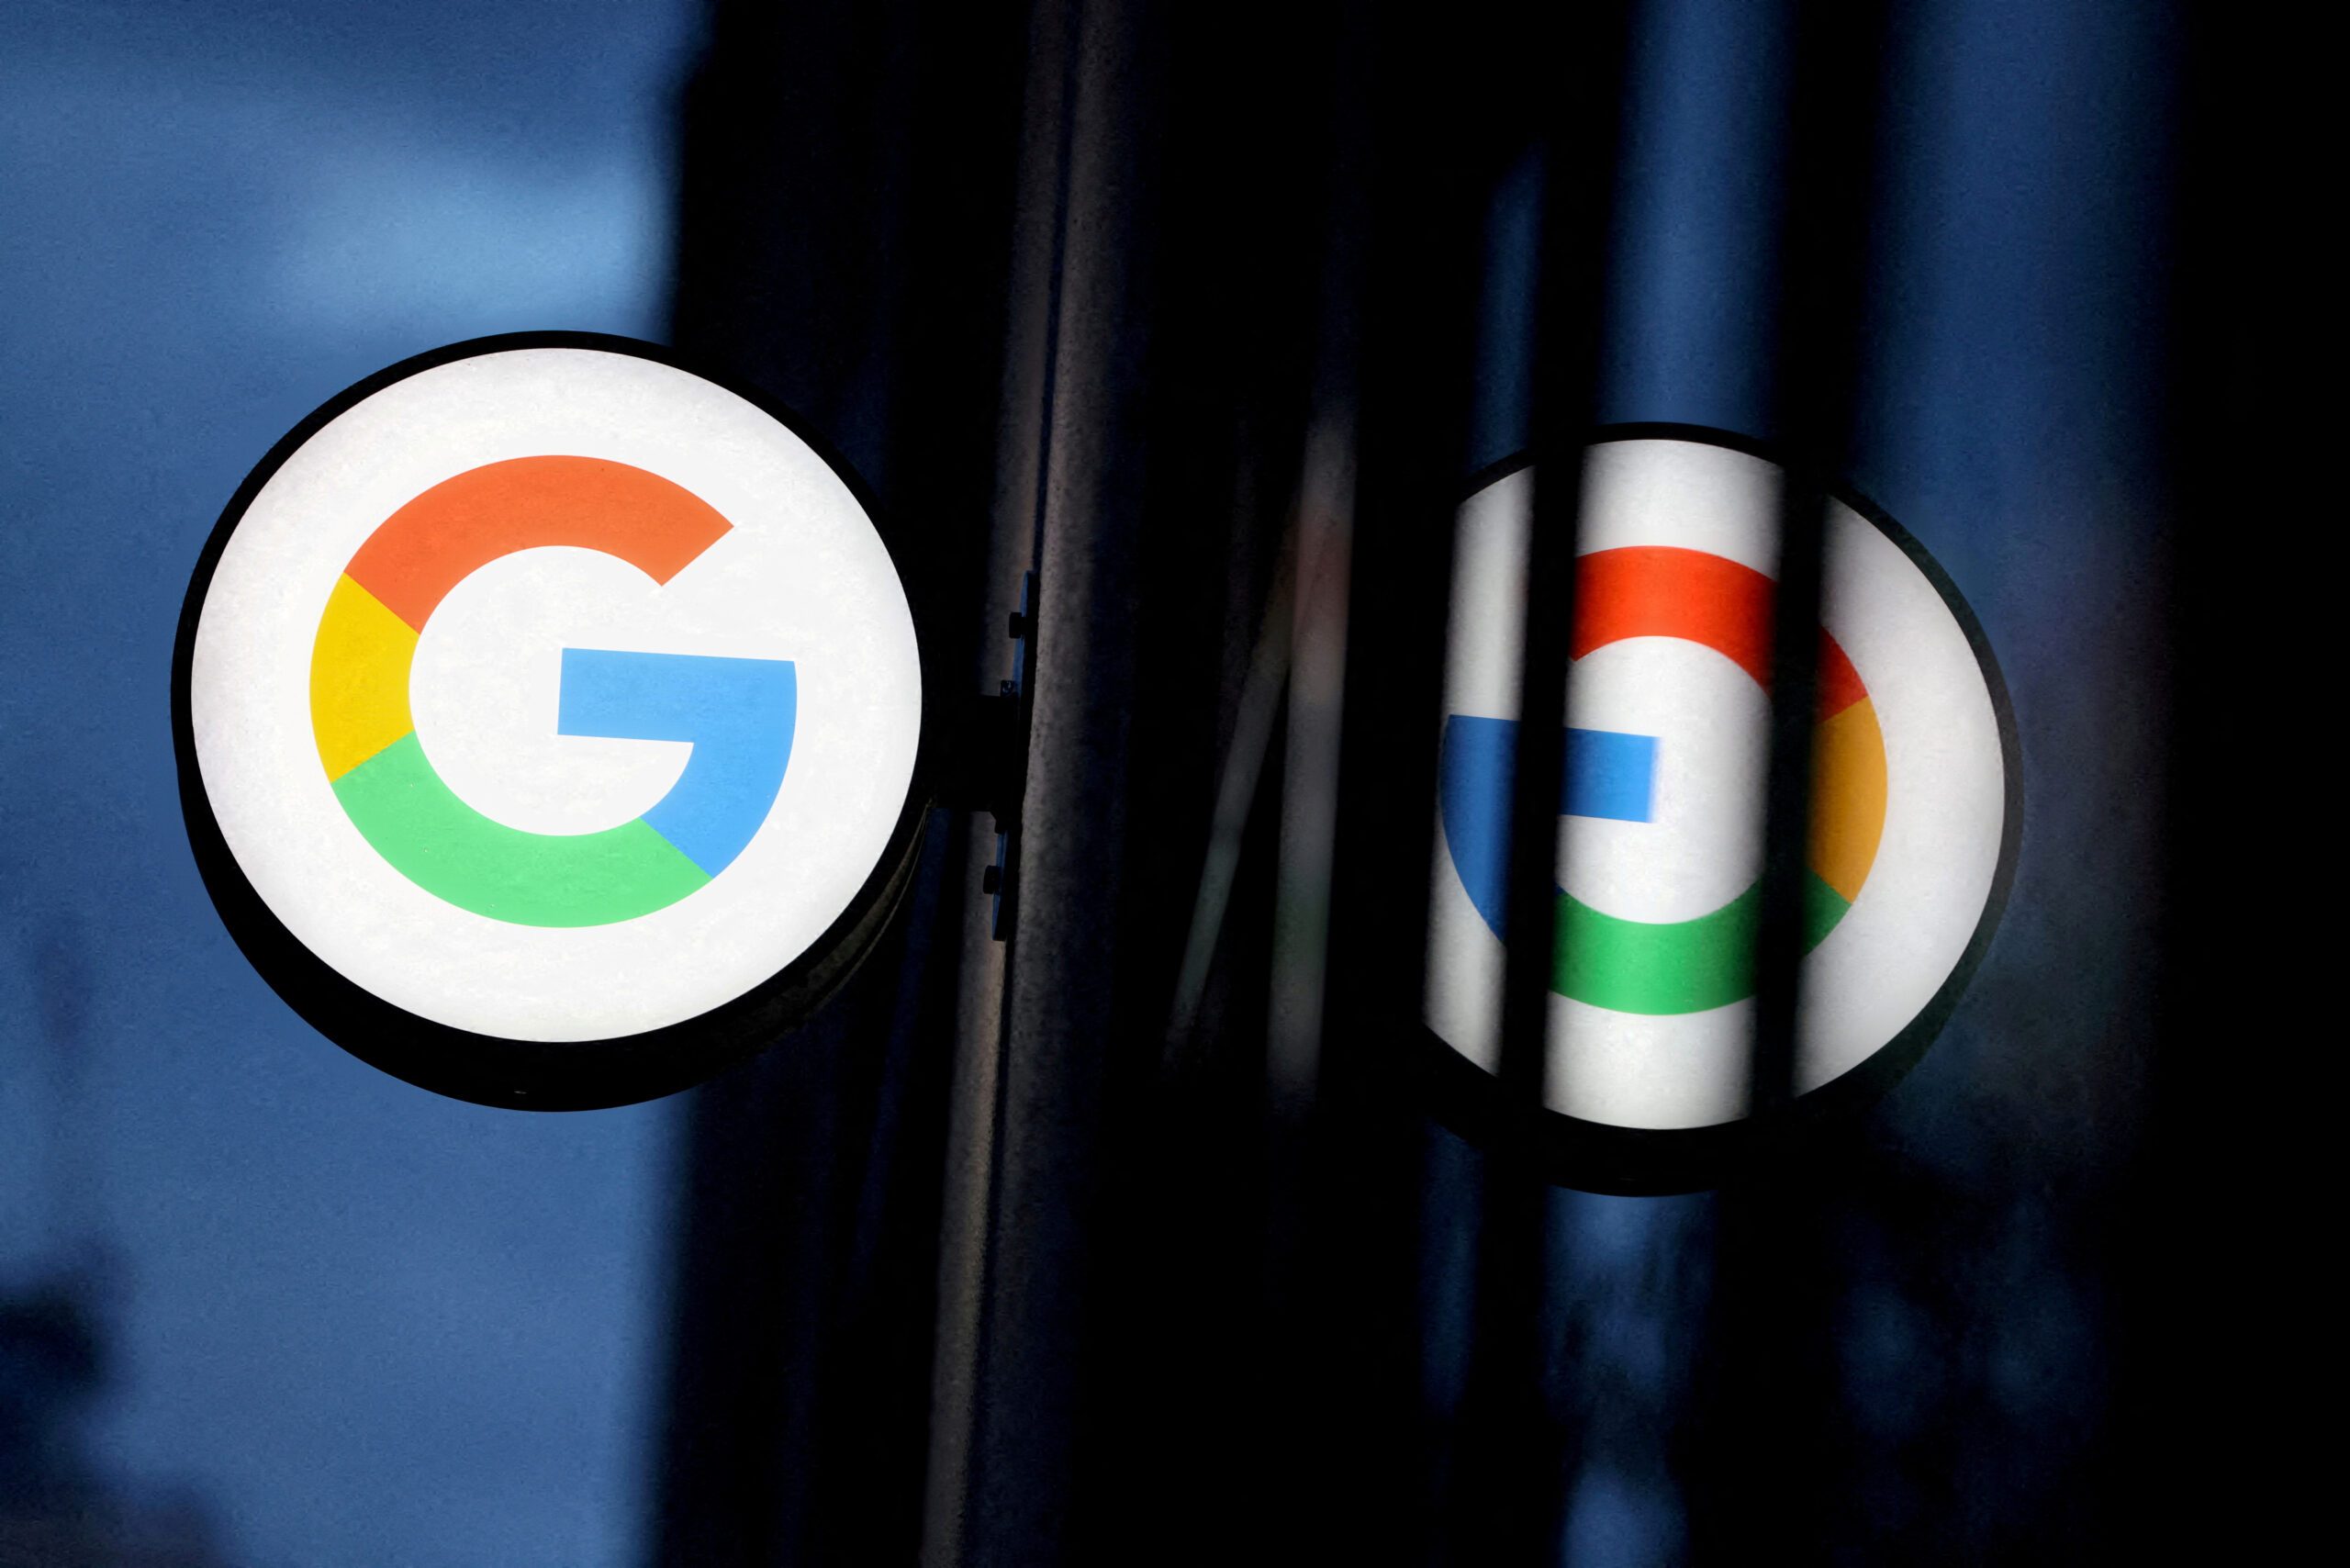 Google Bard może teraz generować kod debugowania, gdy pojawiają się raporty dotyczące etyki AI